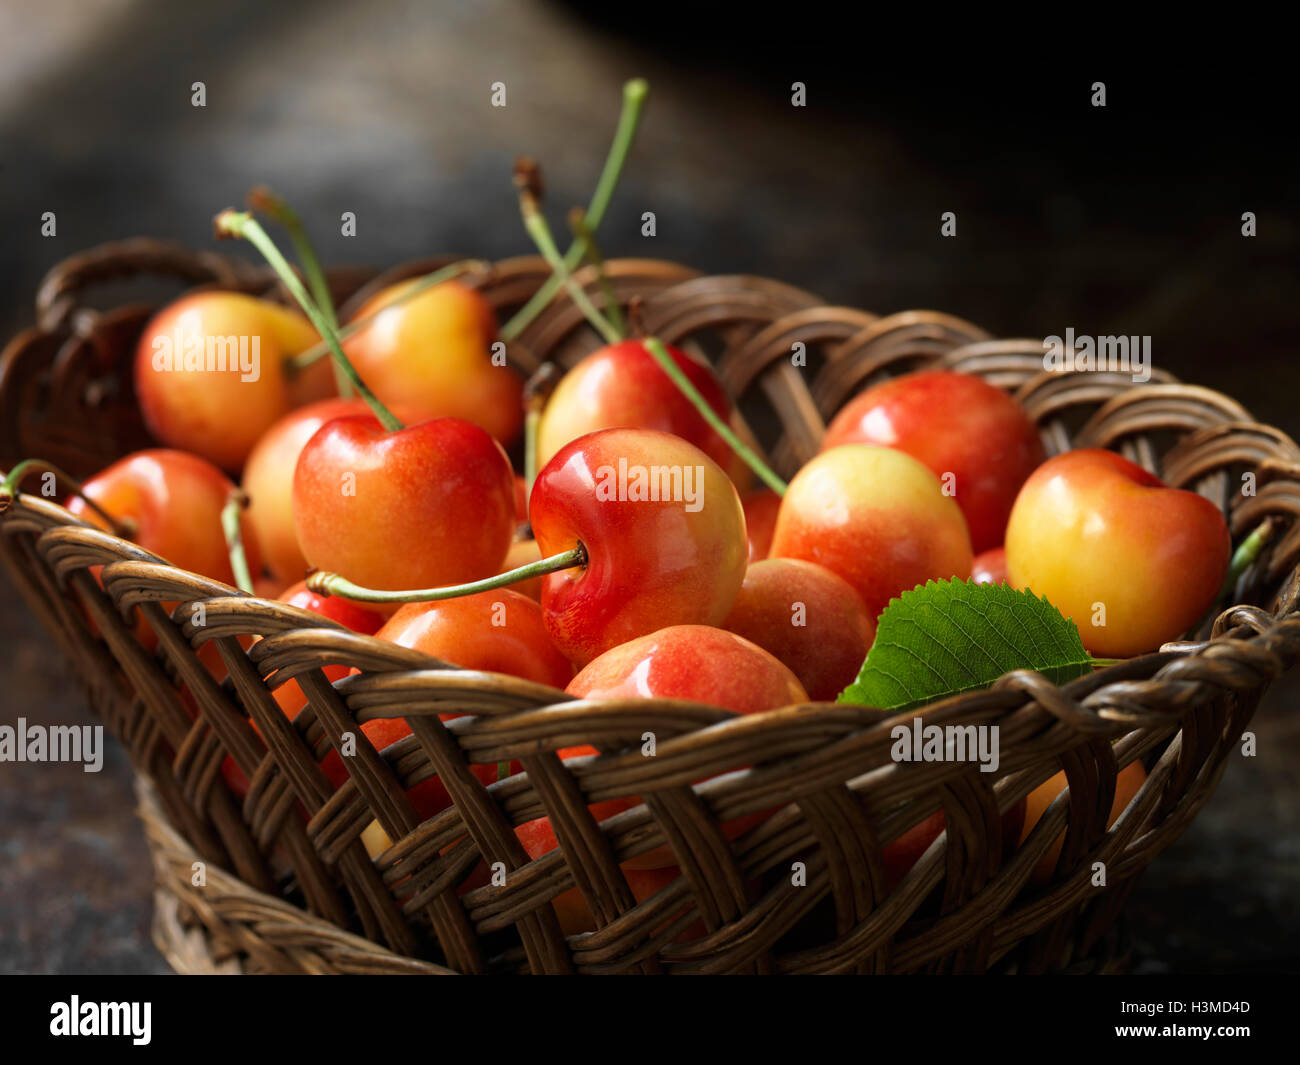 Fresh organic fruit, rainier cherries Stock Photo